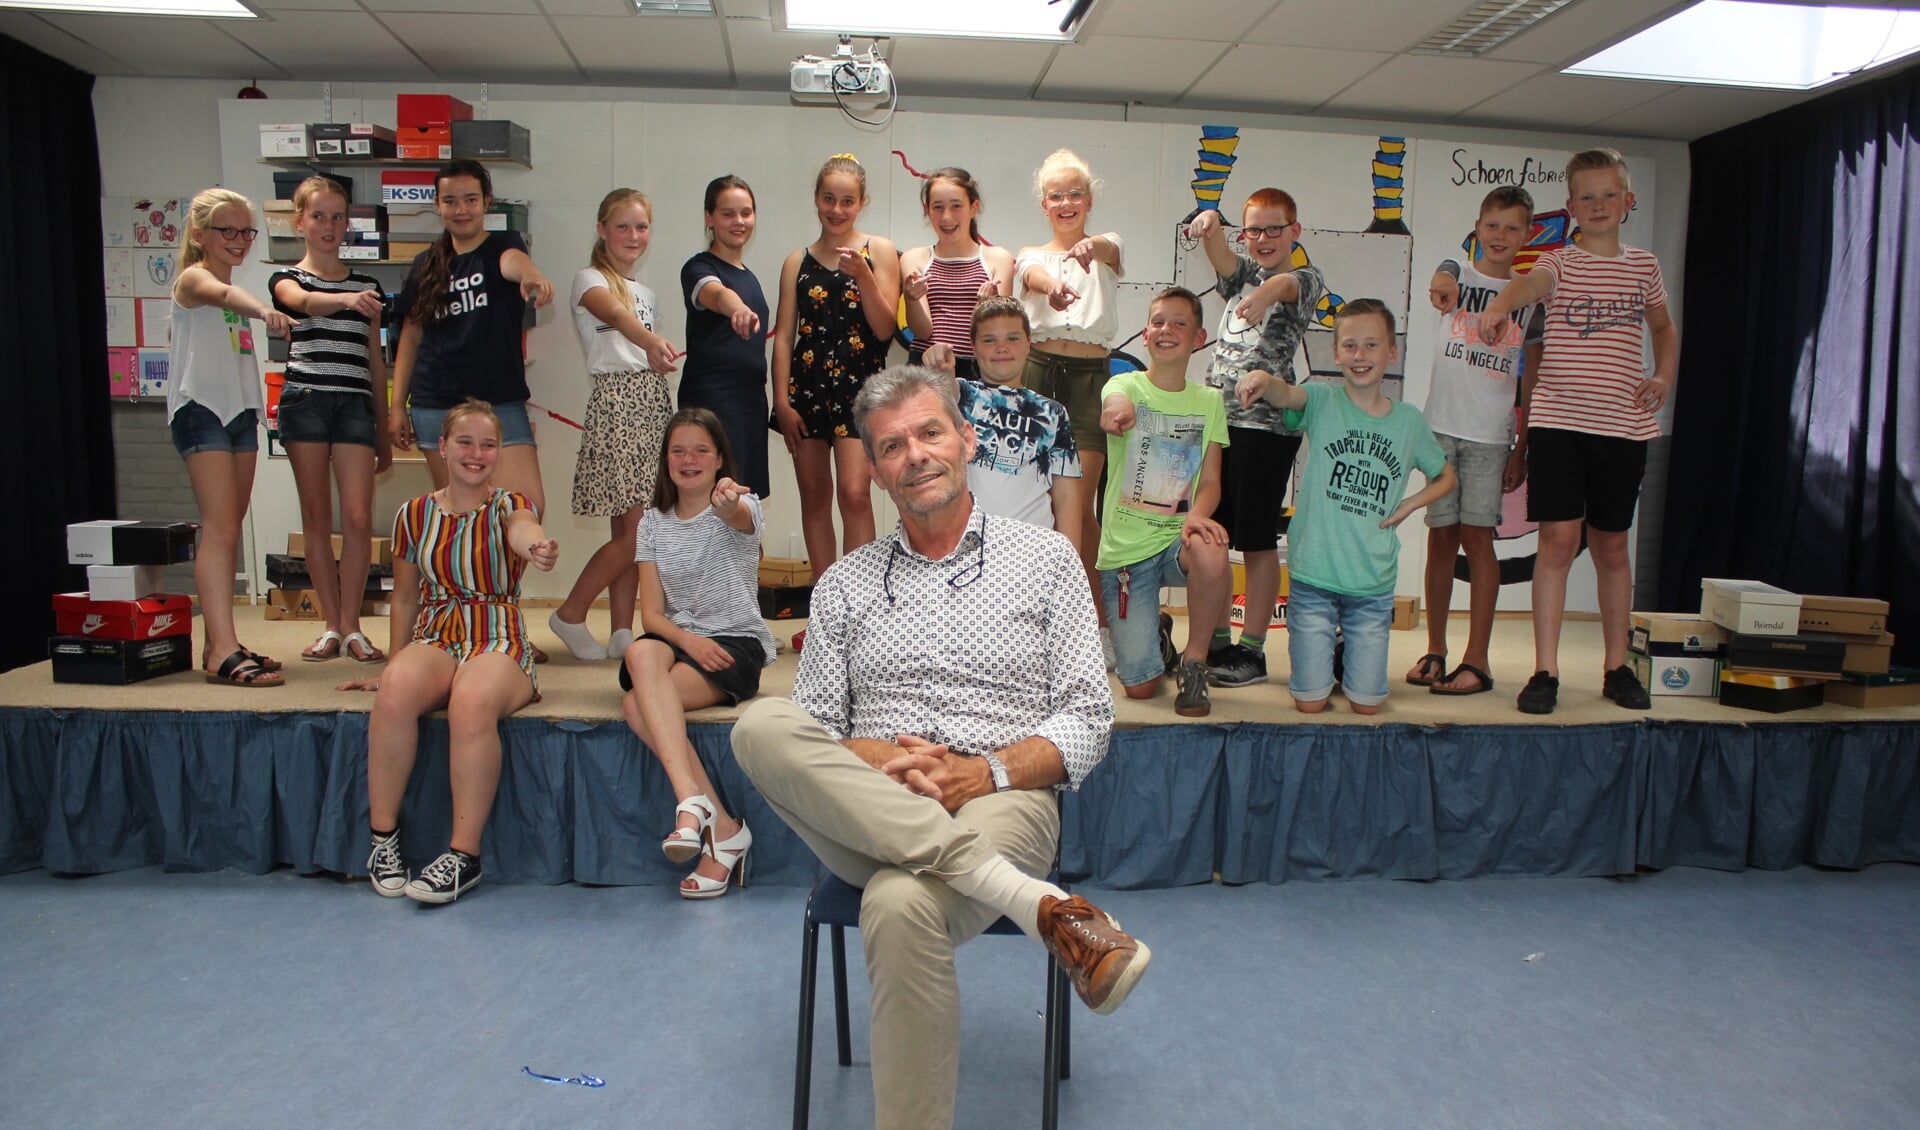 • Meester Gijs Verhoeks met groep 8 tijdens de repetitie voor de musical. Niet alle kinderen konden bij het fotomoment aanwezig zijn.